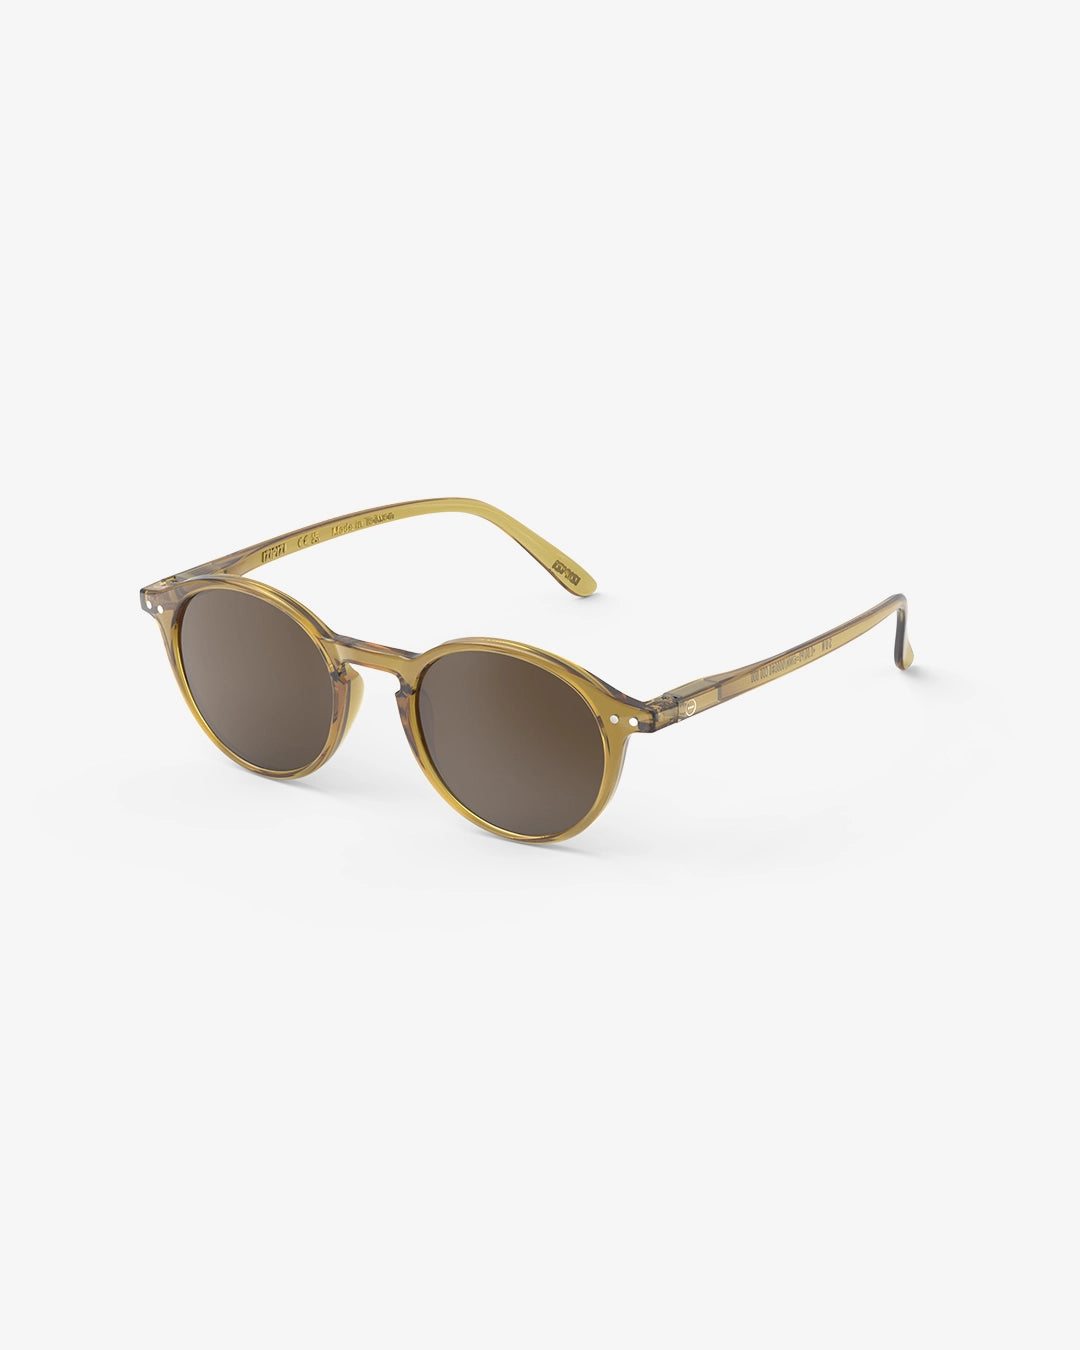 Sunglasses  - #D Golden Green